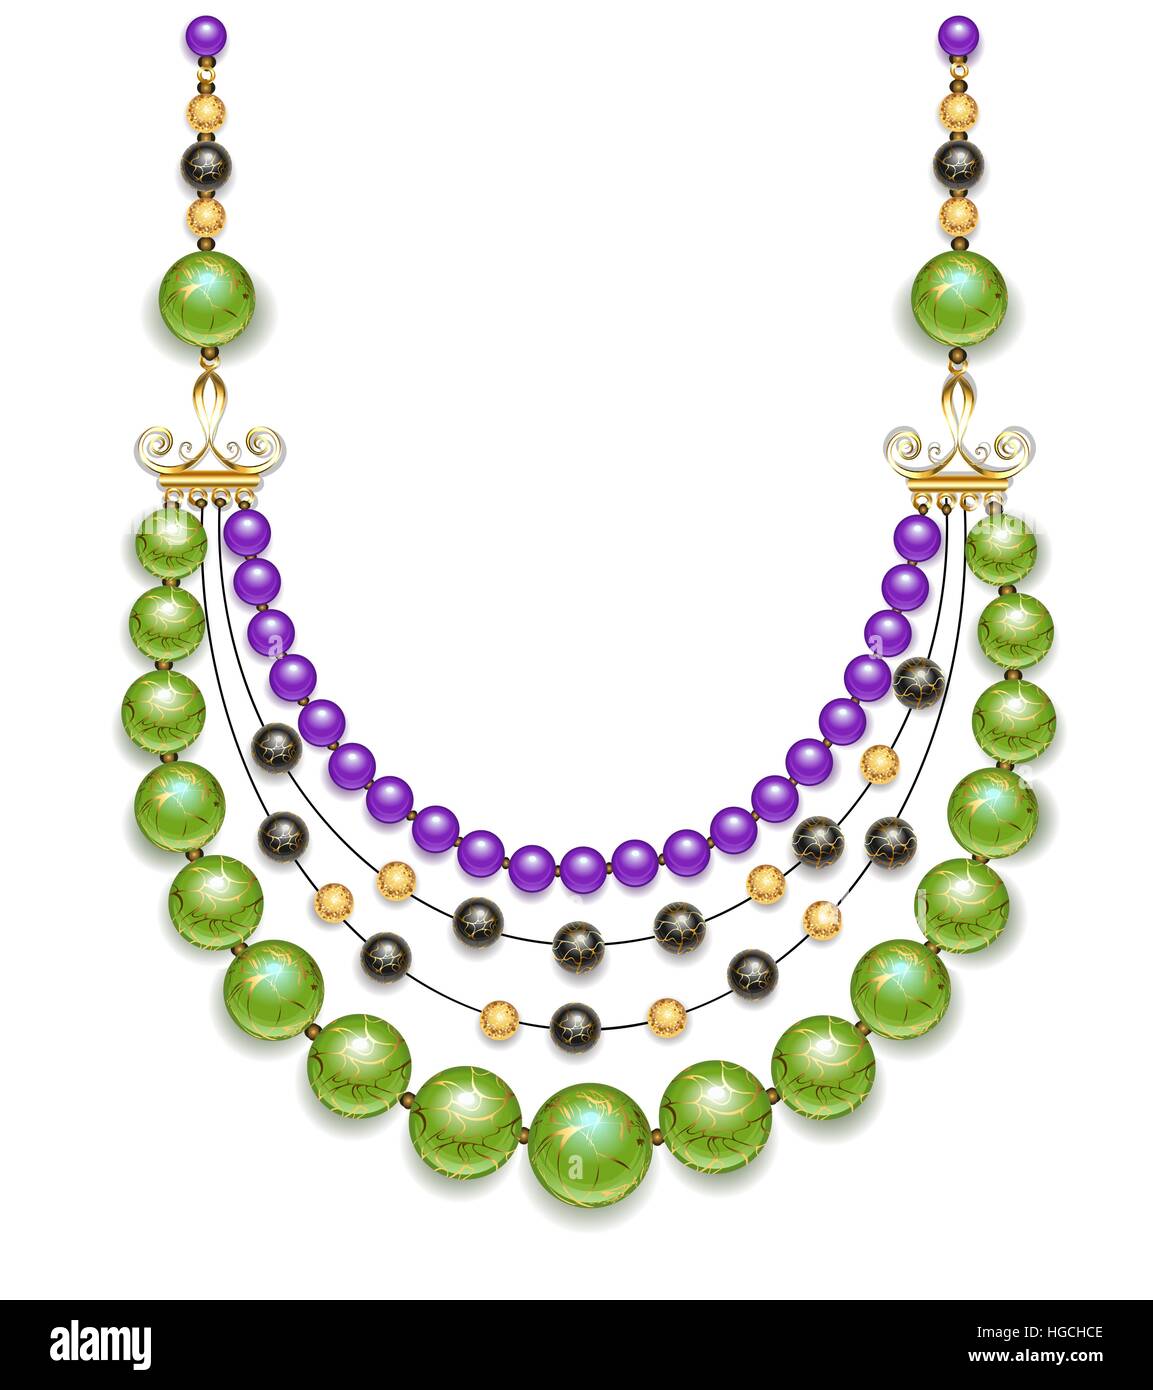 Collier de vert, noir et violet fashion perles sur un fond blanc. Quartier branché de verdure. Design bijoux. Illustration de Vecteur